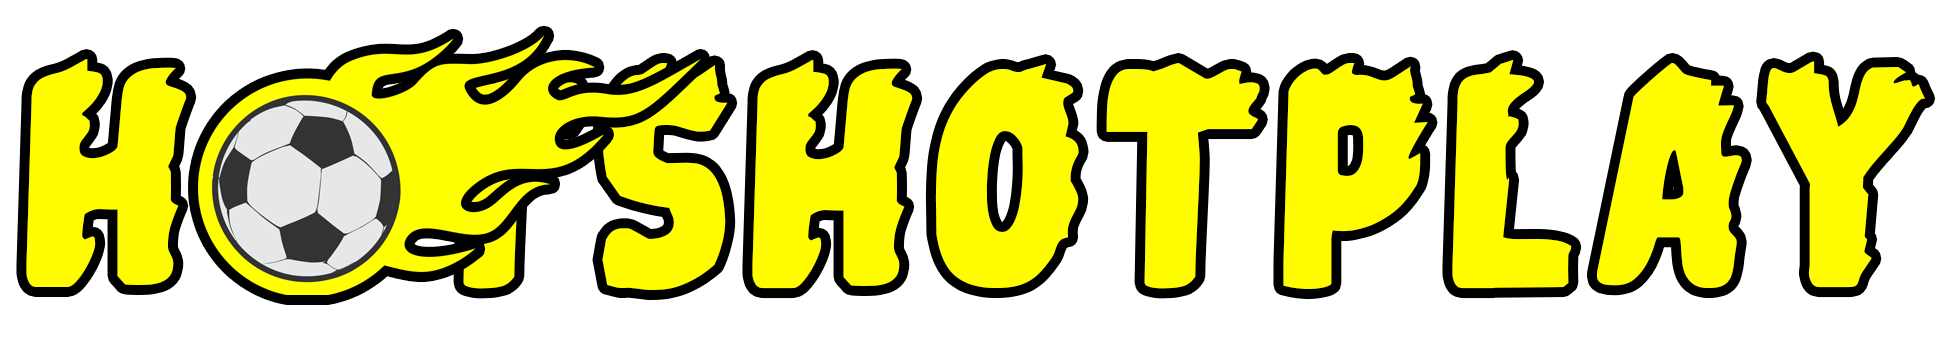 HotshotPlay